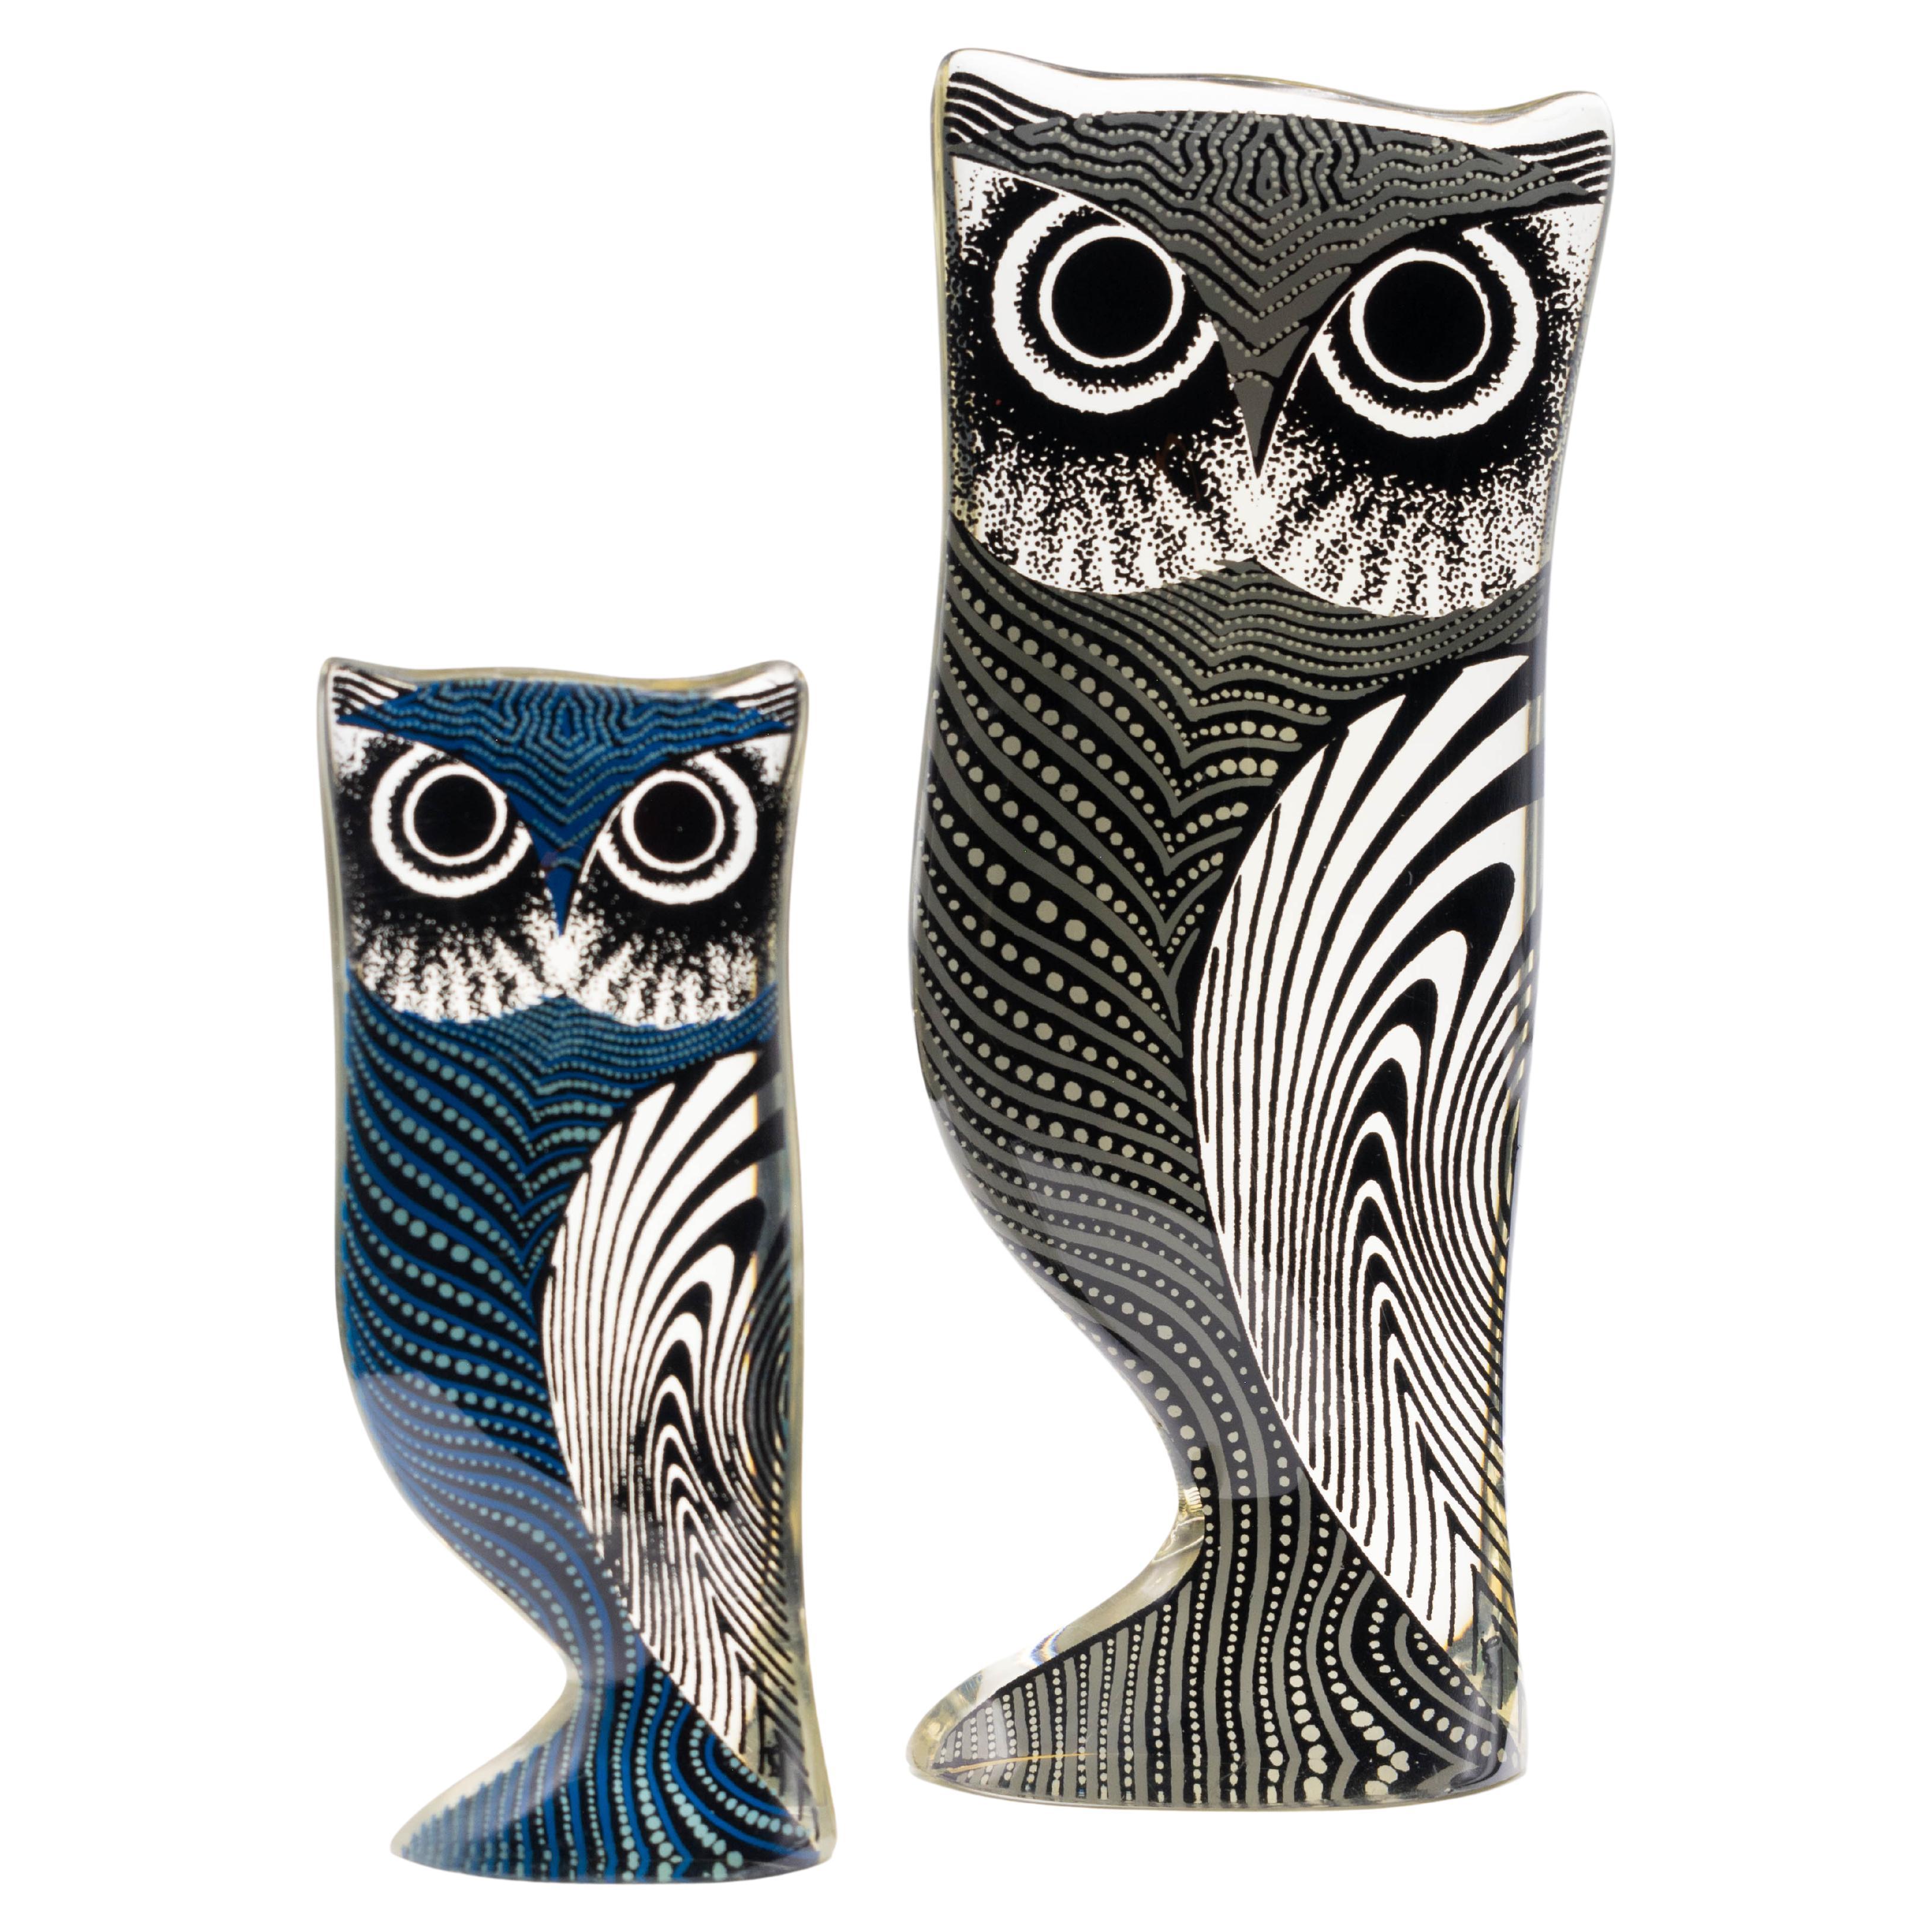 Palatnik Op Art Lucite Owls Set of 2